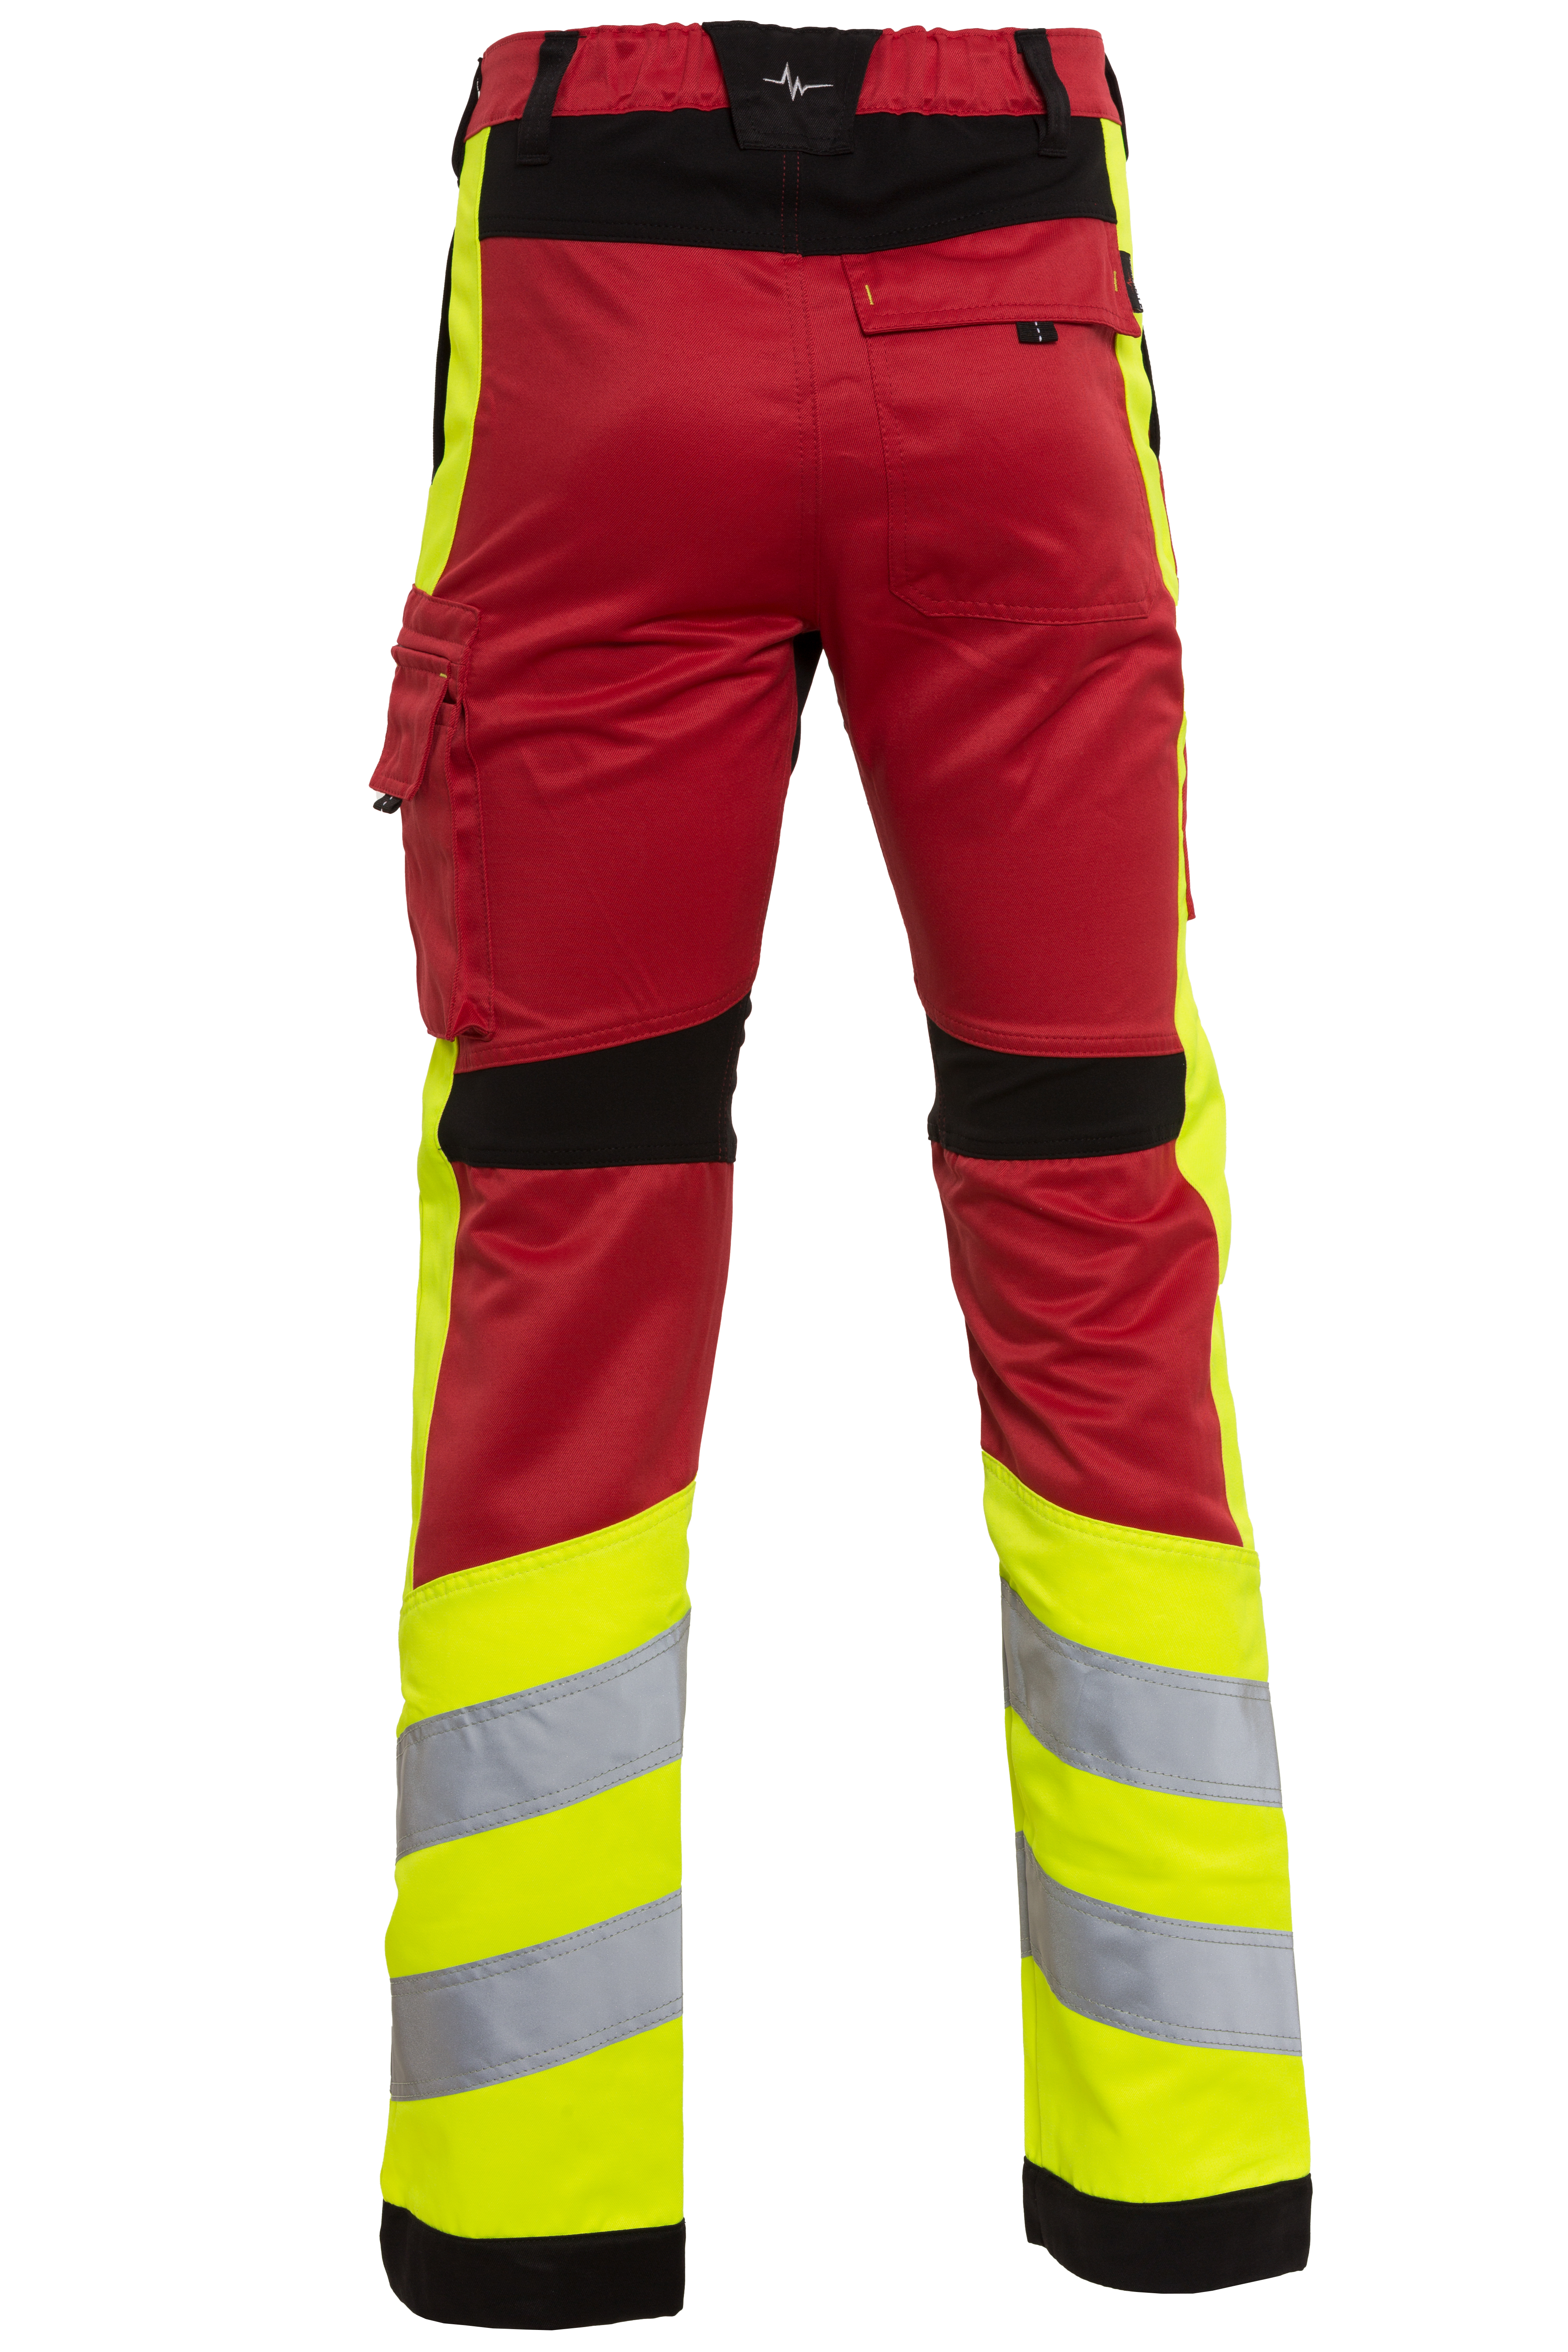 Rescuewear Unisex Hose Stretch HiVis Klasse 1 Rot / Schwarz / Neon Gelb  - 28